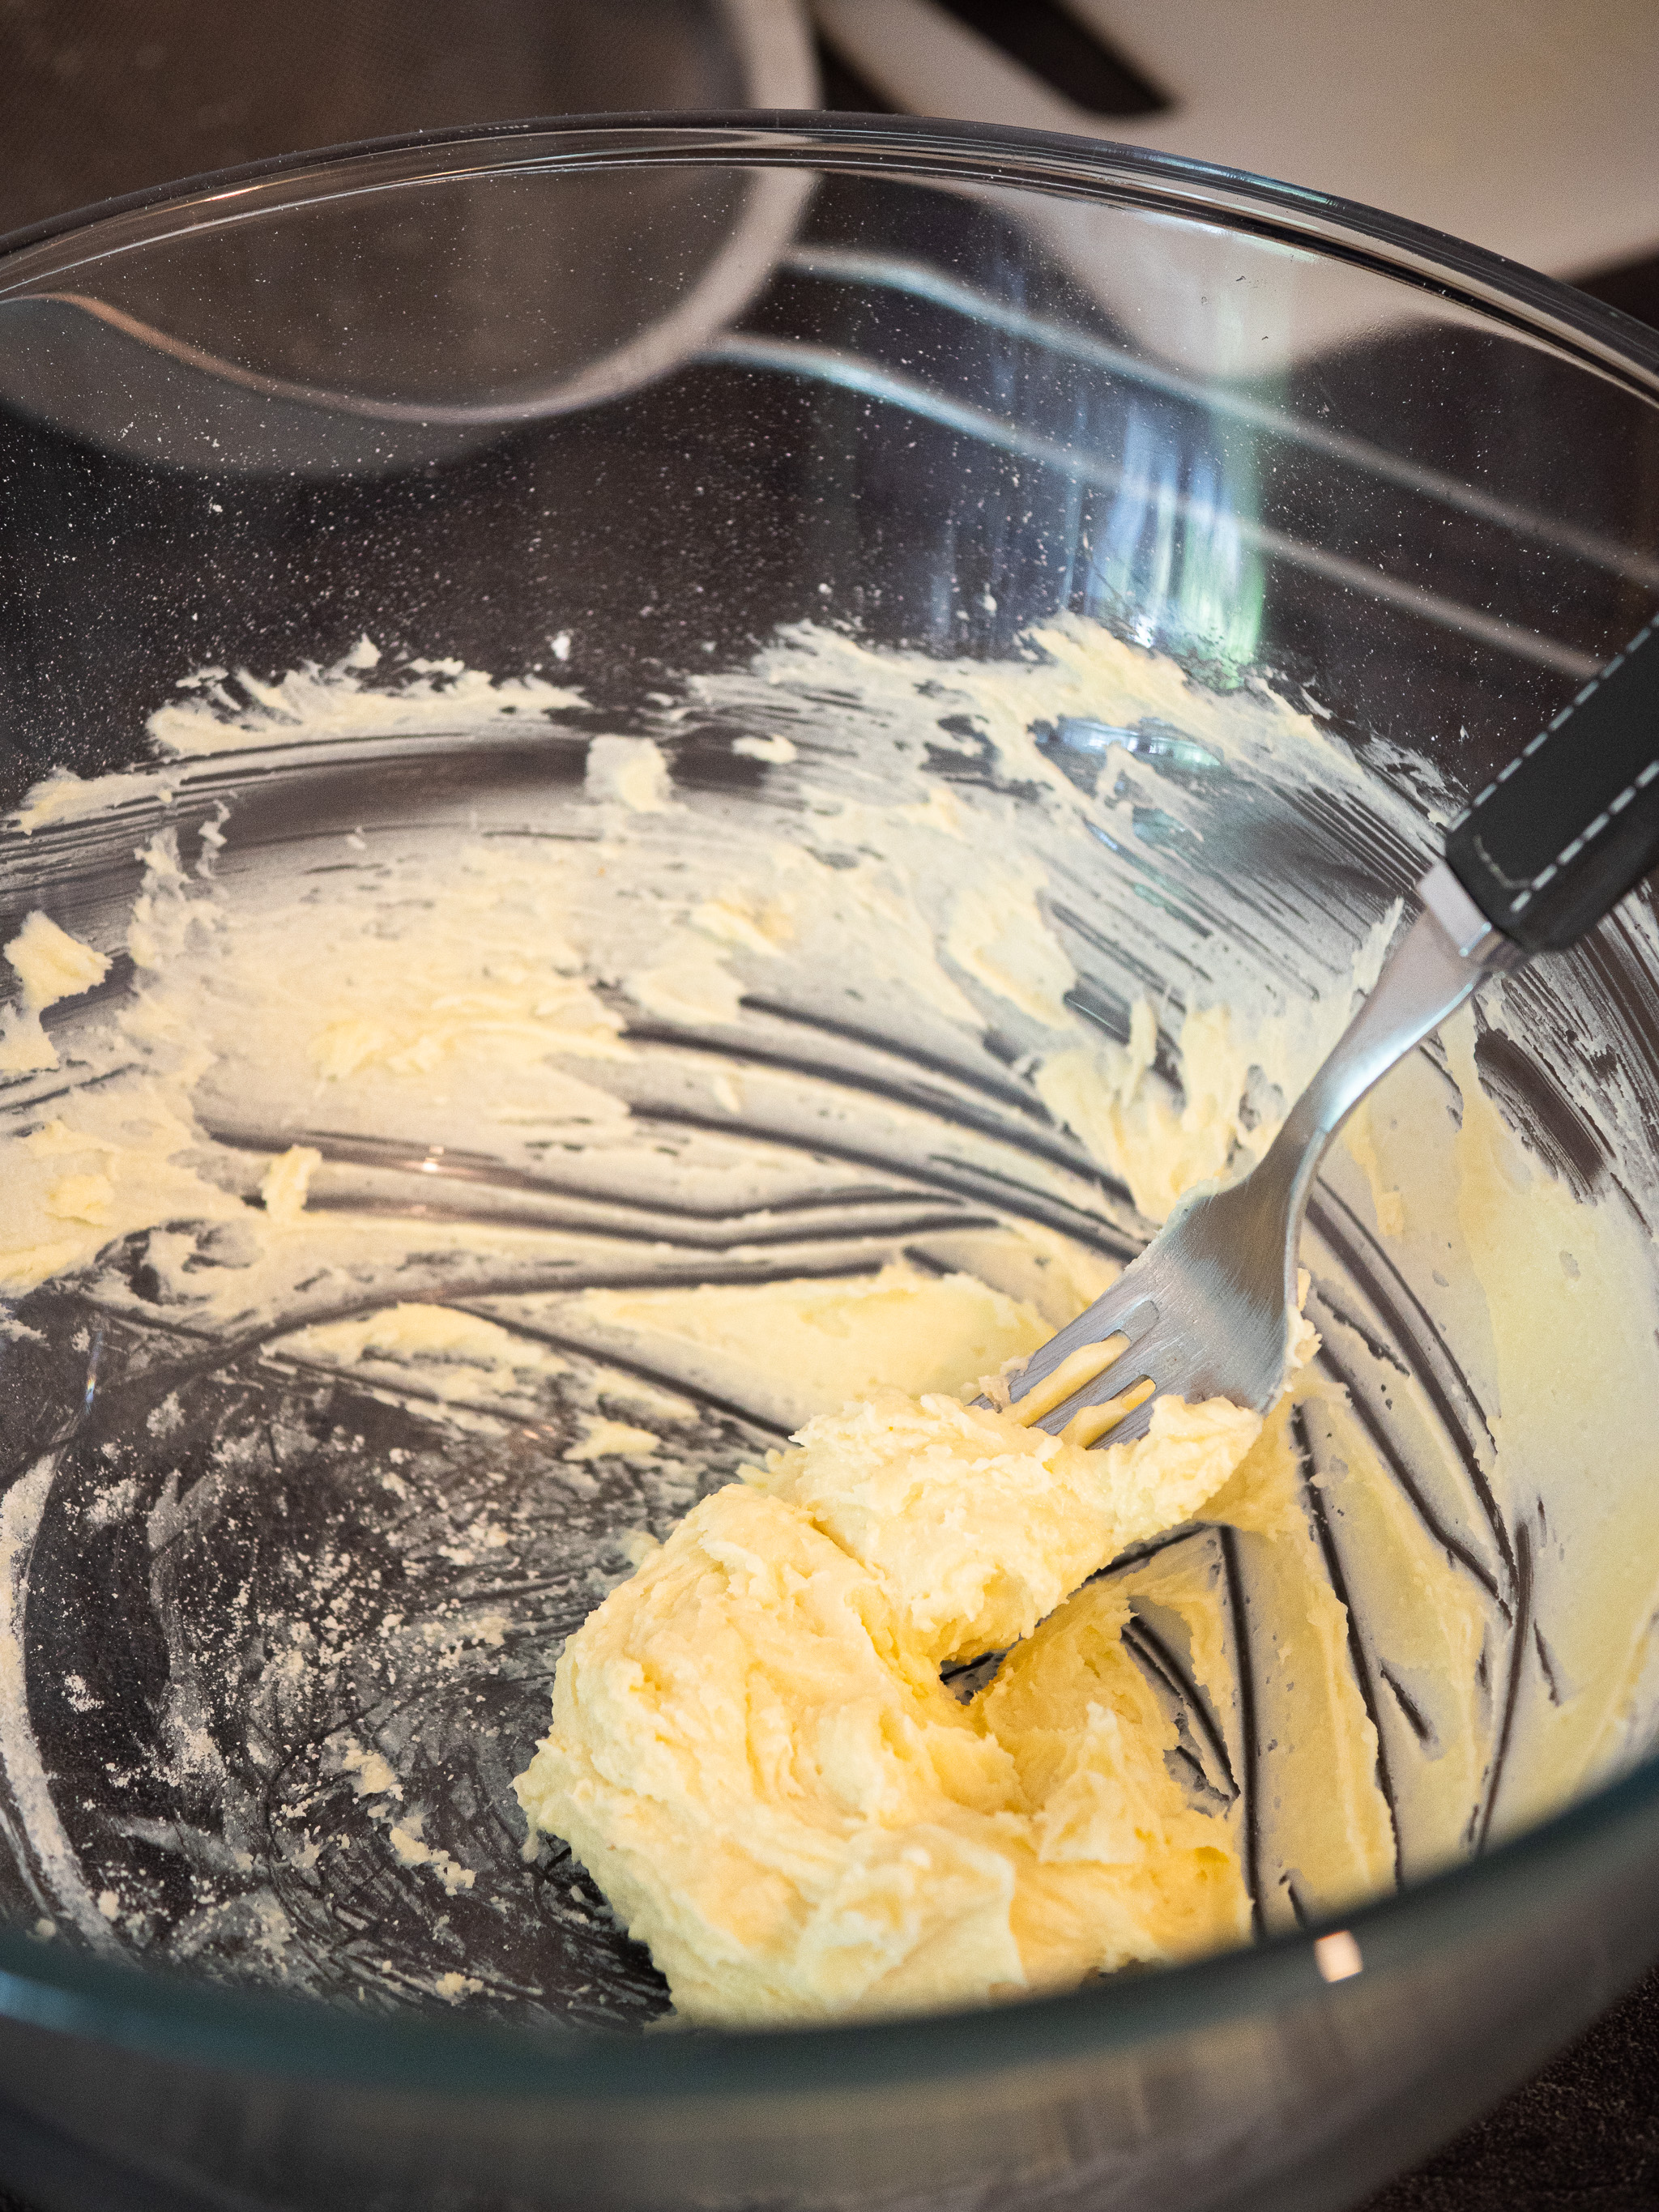 réaliser le crémage avec la margarine, le sucre, la poudre d'amande et le sel